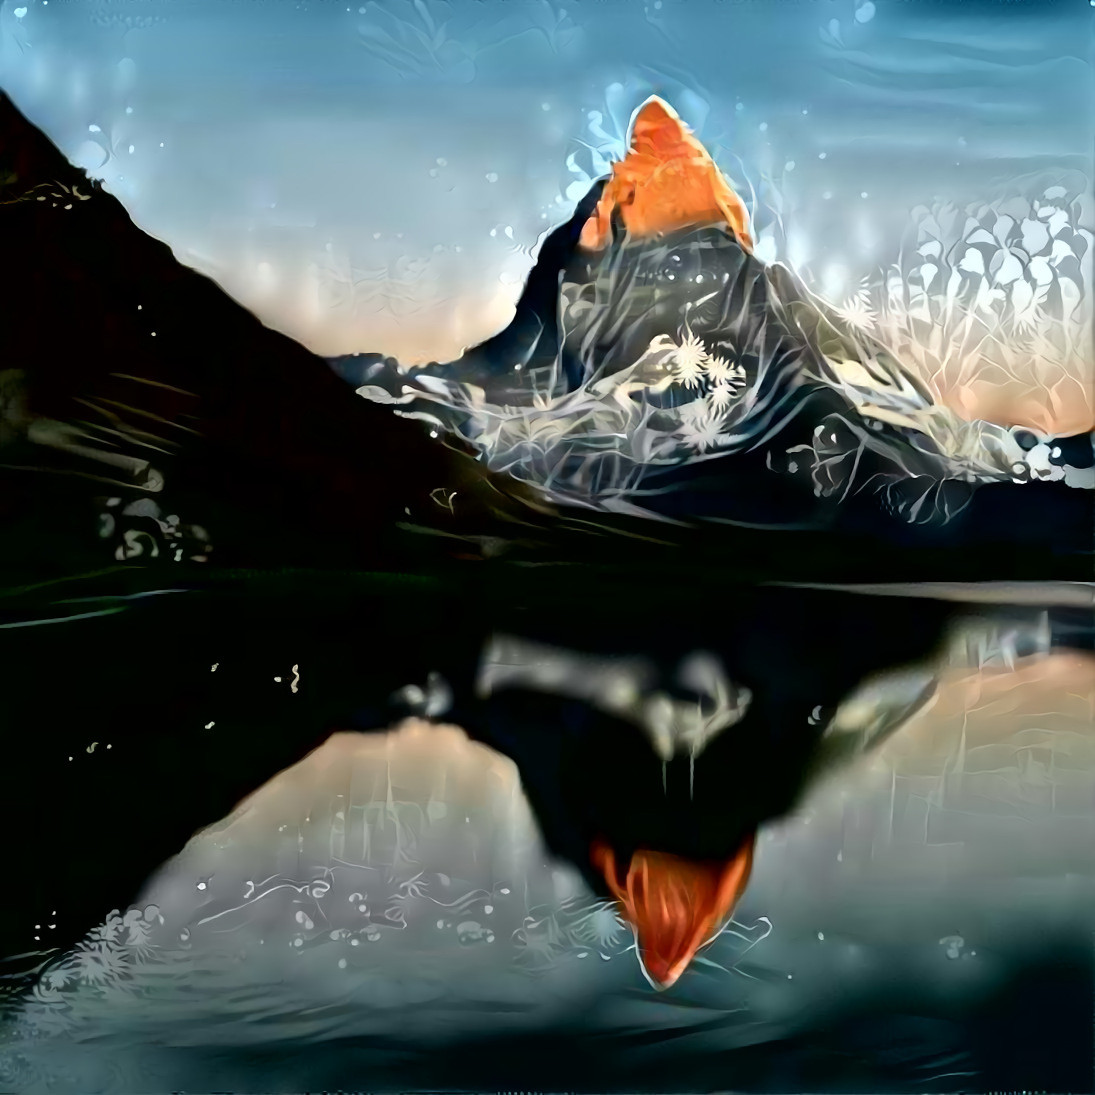 Matterhorn (CH)